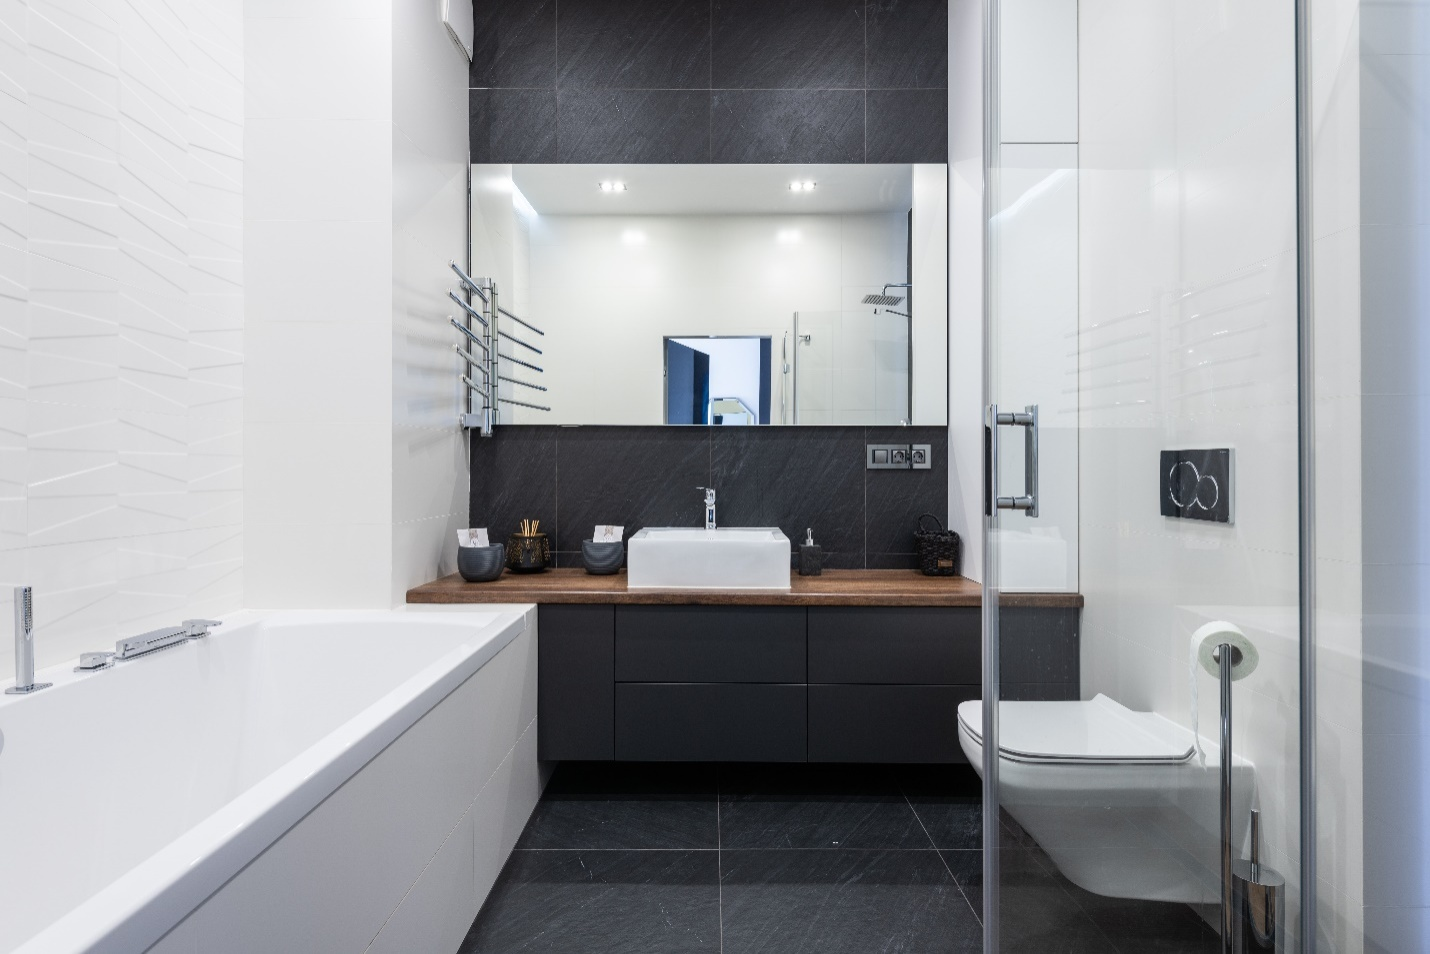 a modern-style bathroom with tiles